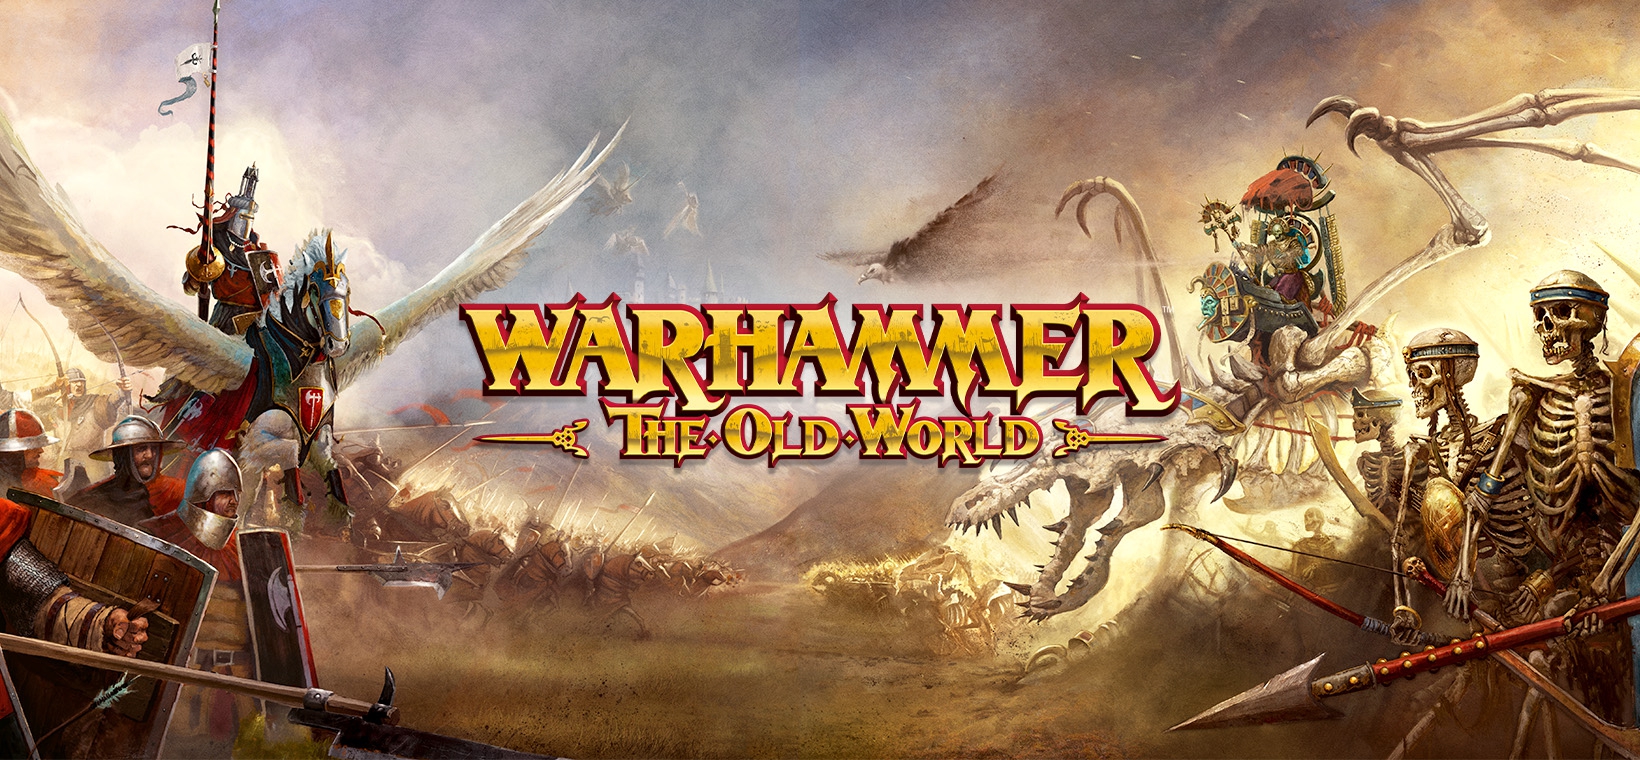 Warhammer Oldworld